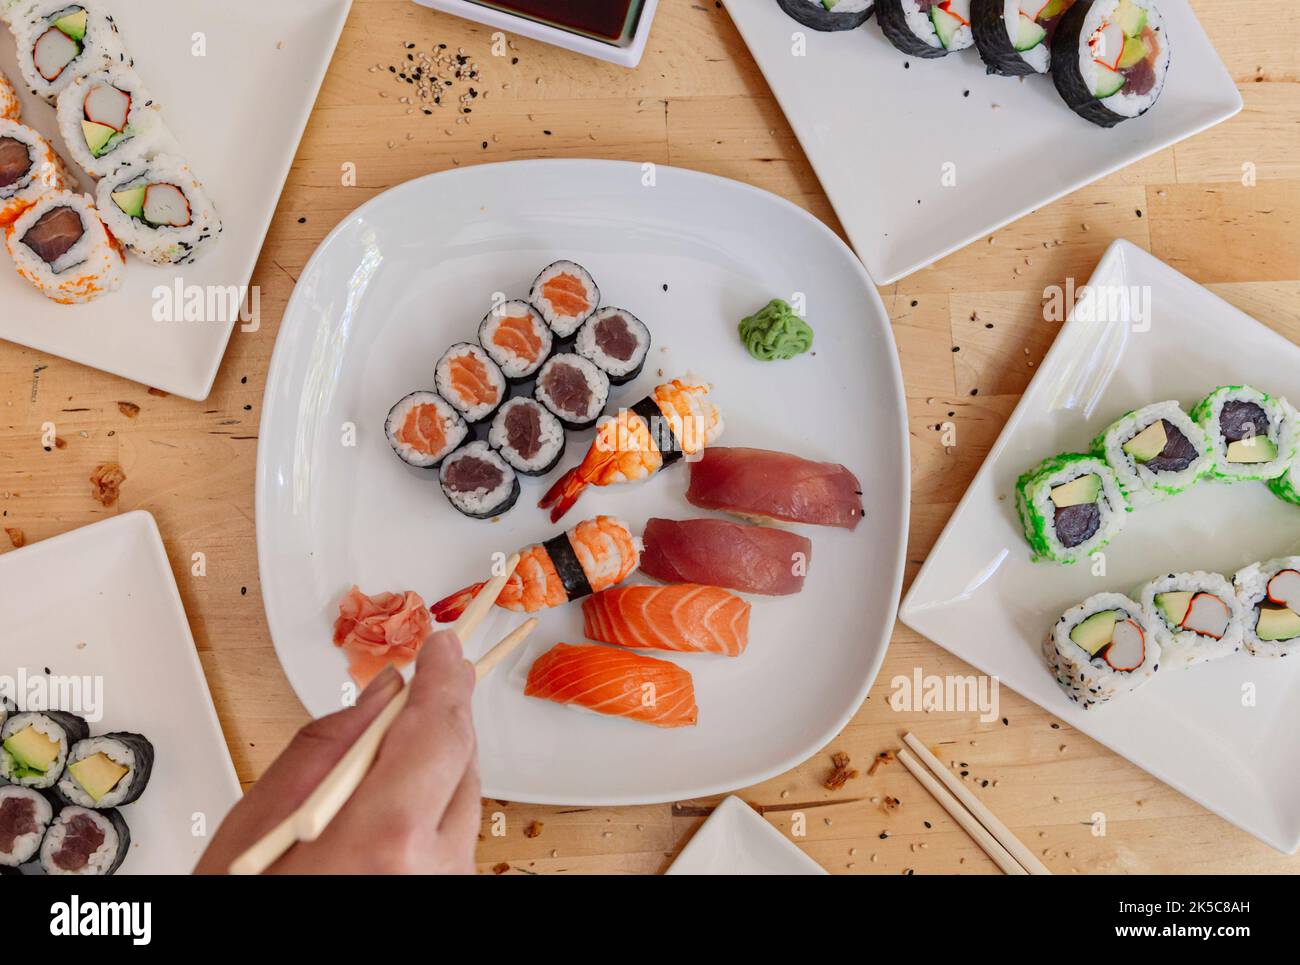 Elle se rapproche des mains prenant un morceau de sushi avec des baguettes. Fruits de mer sains et plats japonais asiatiques. Banque D'Images